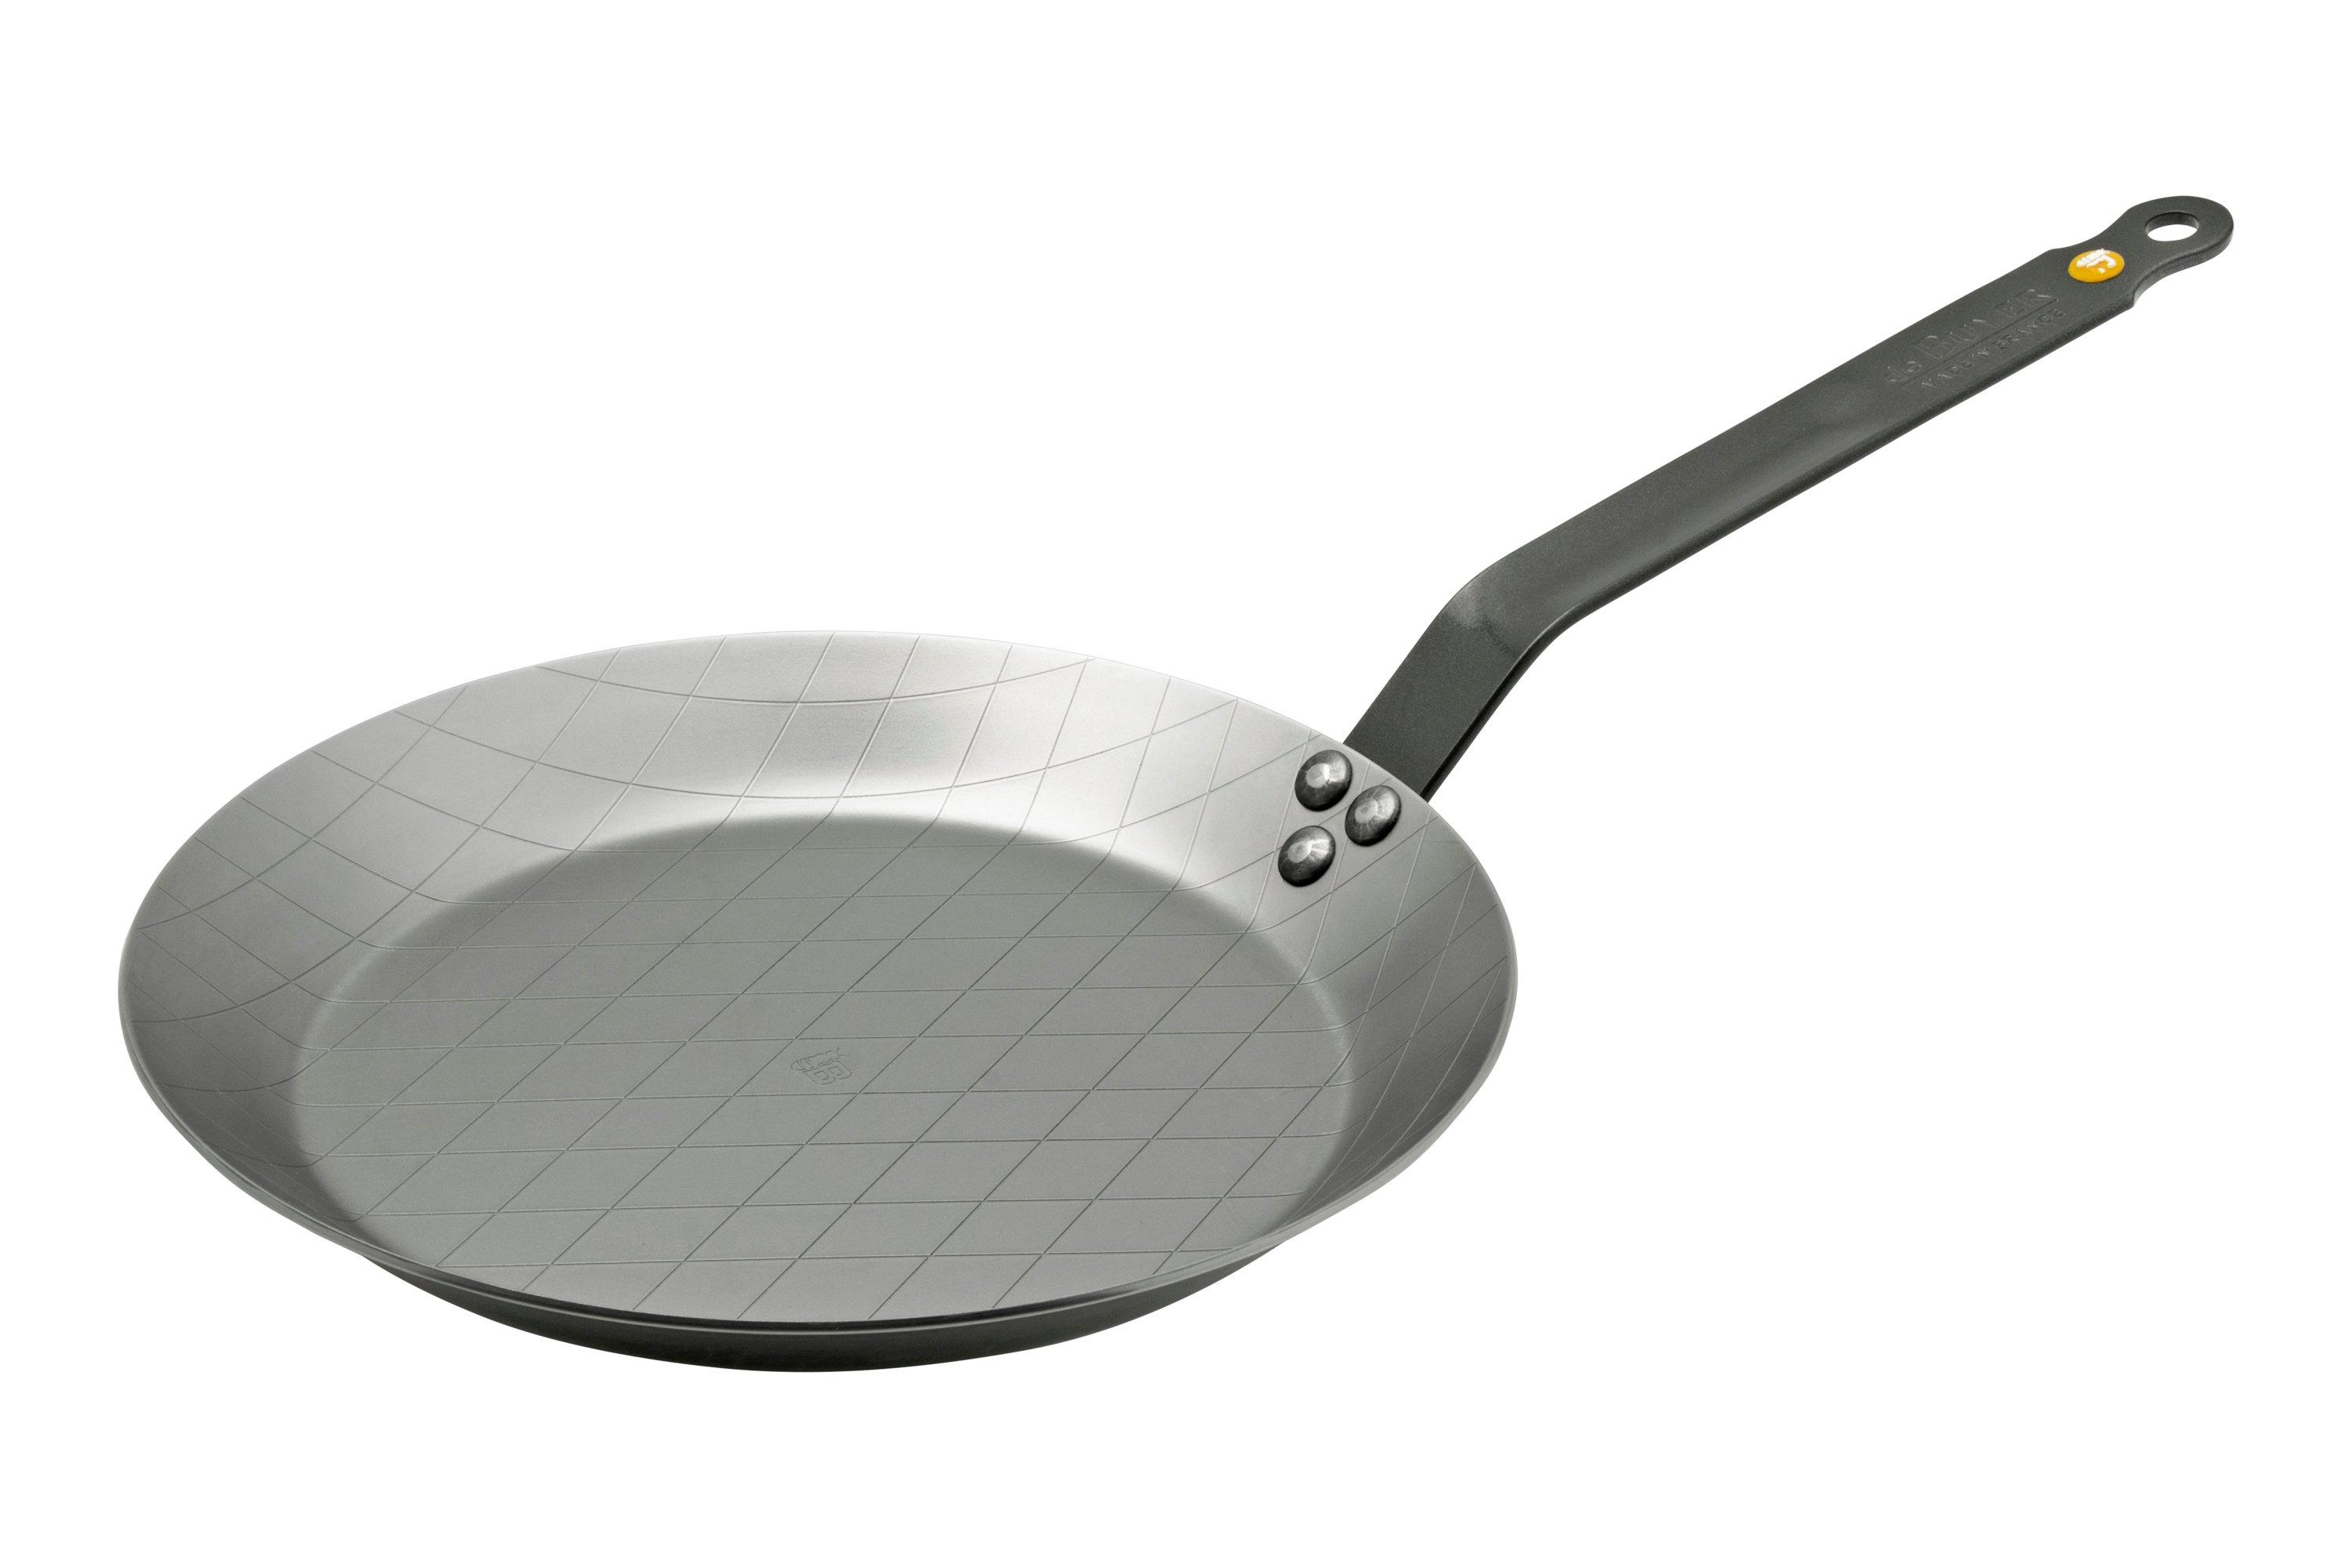 Frying pan MINERAL B ELEMENT 20 cm, steel, de Buyer